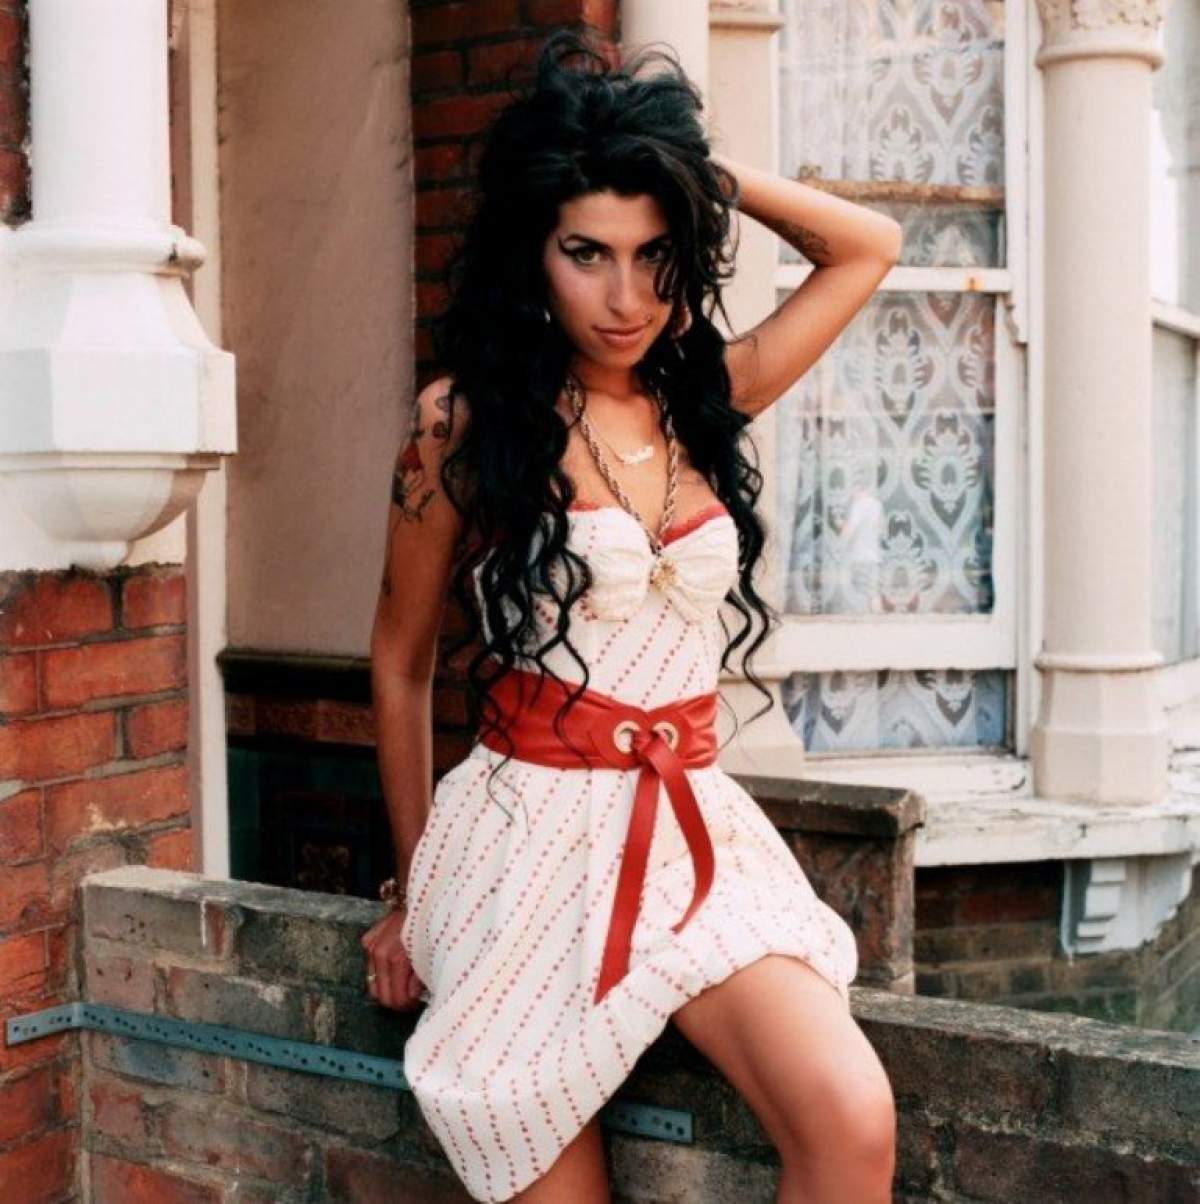 Declaraţia şocantă pe care o face mama regretatei Amy Winehouse: "Moartea ei nu a fost o surpriză!"